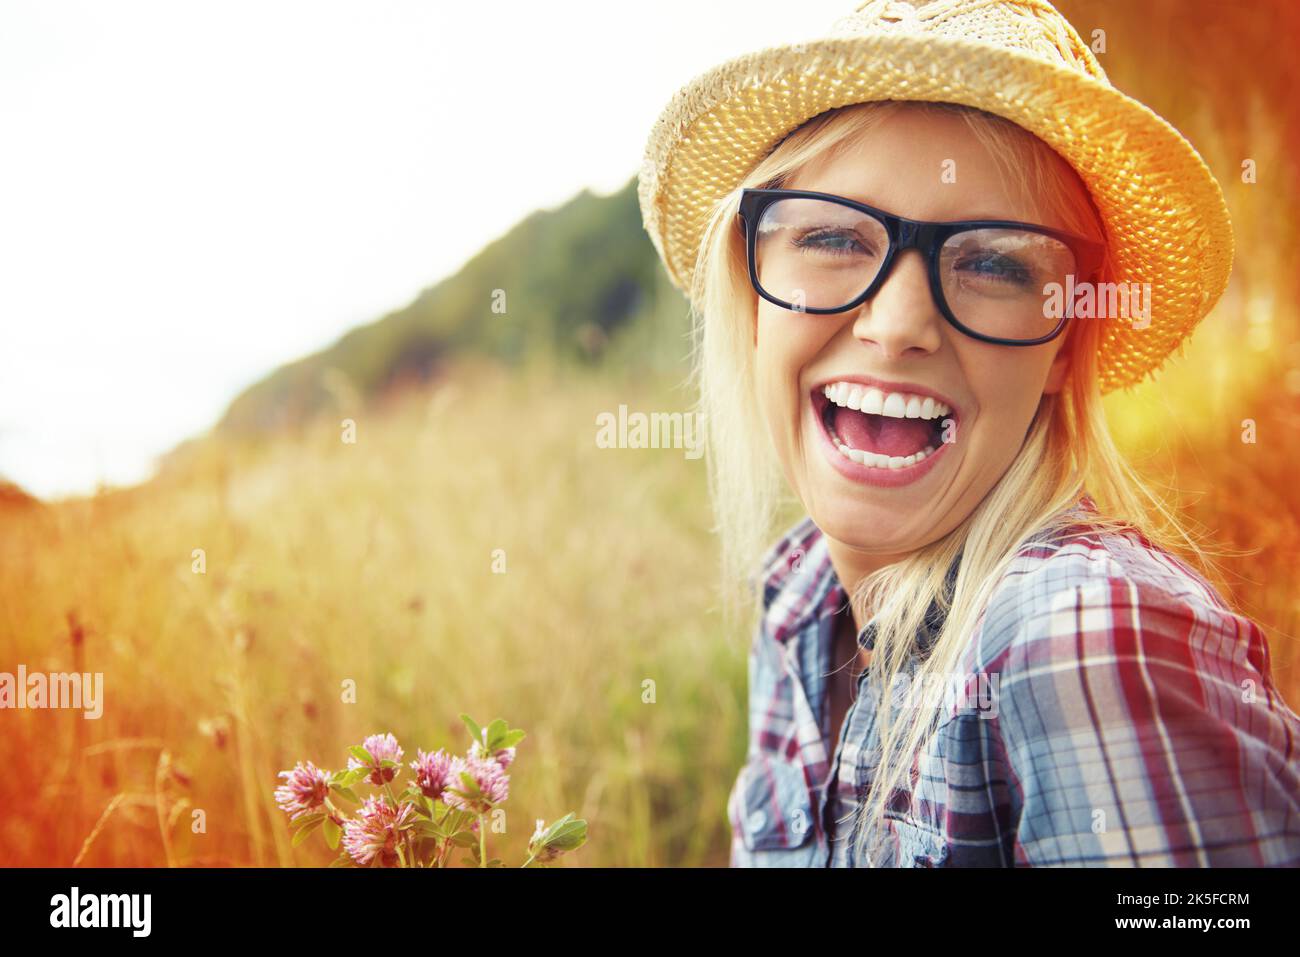 Genießen Sie die kleinen Dinge im Leben. Schöne junge Hipster in einem Feld - Lomo-Stil Fotografie. Stockfoto